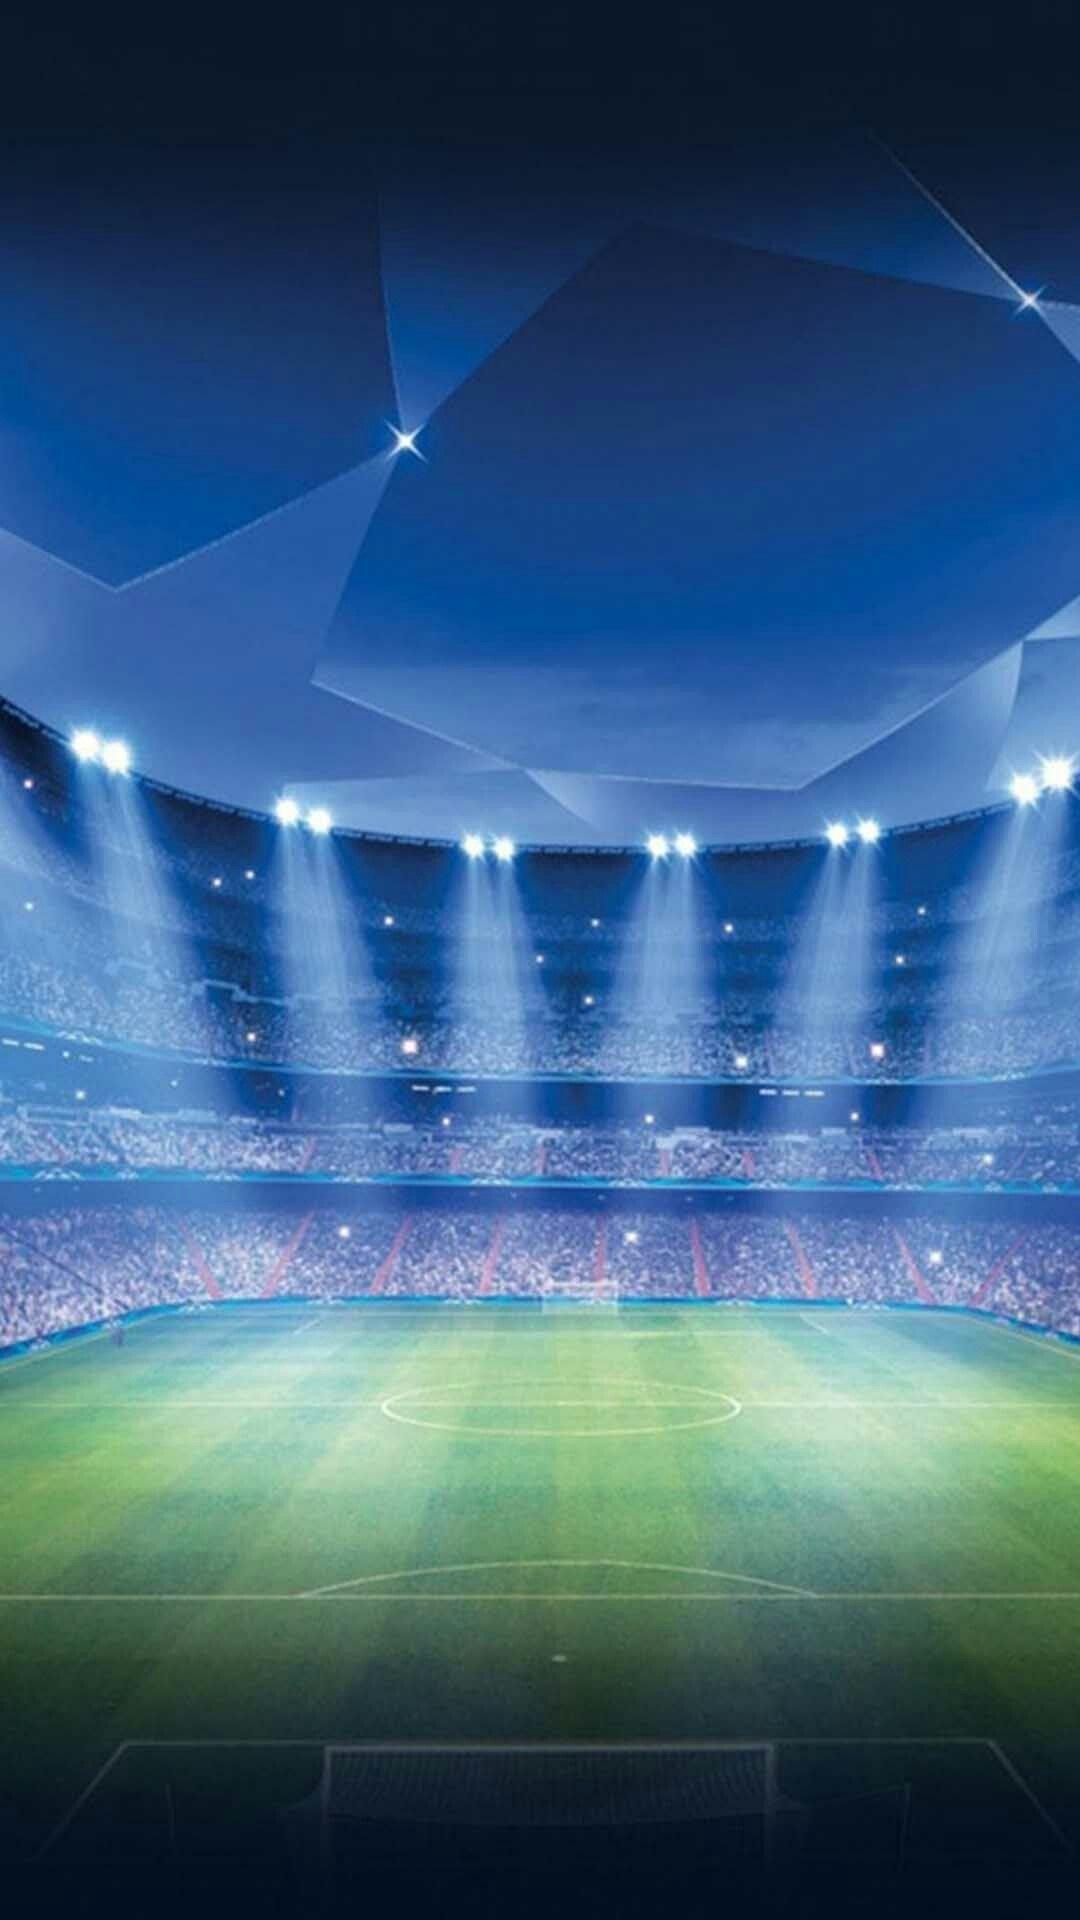 Soccer Stadium Wallpaper. Stadium wallpaper, Soccer